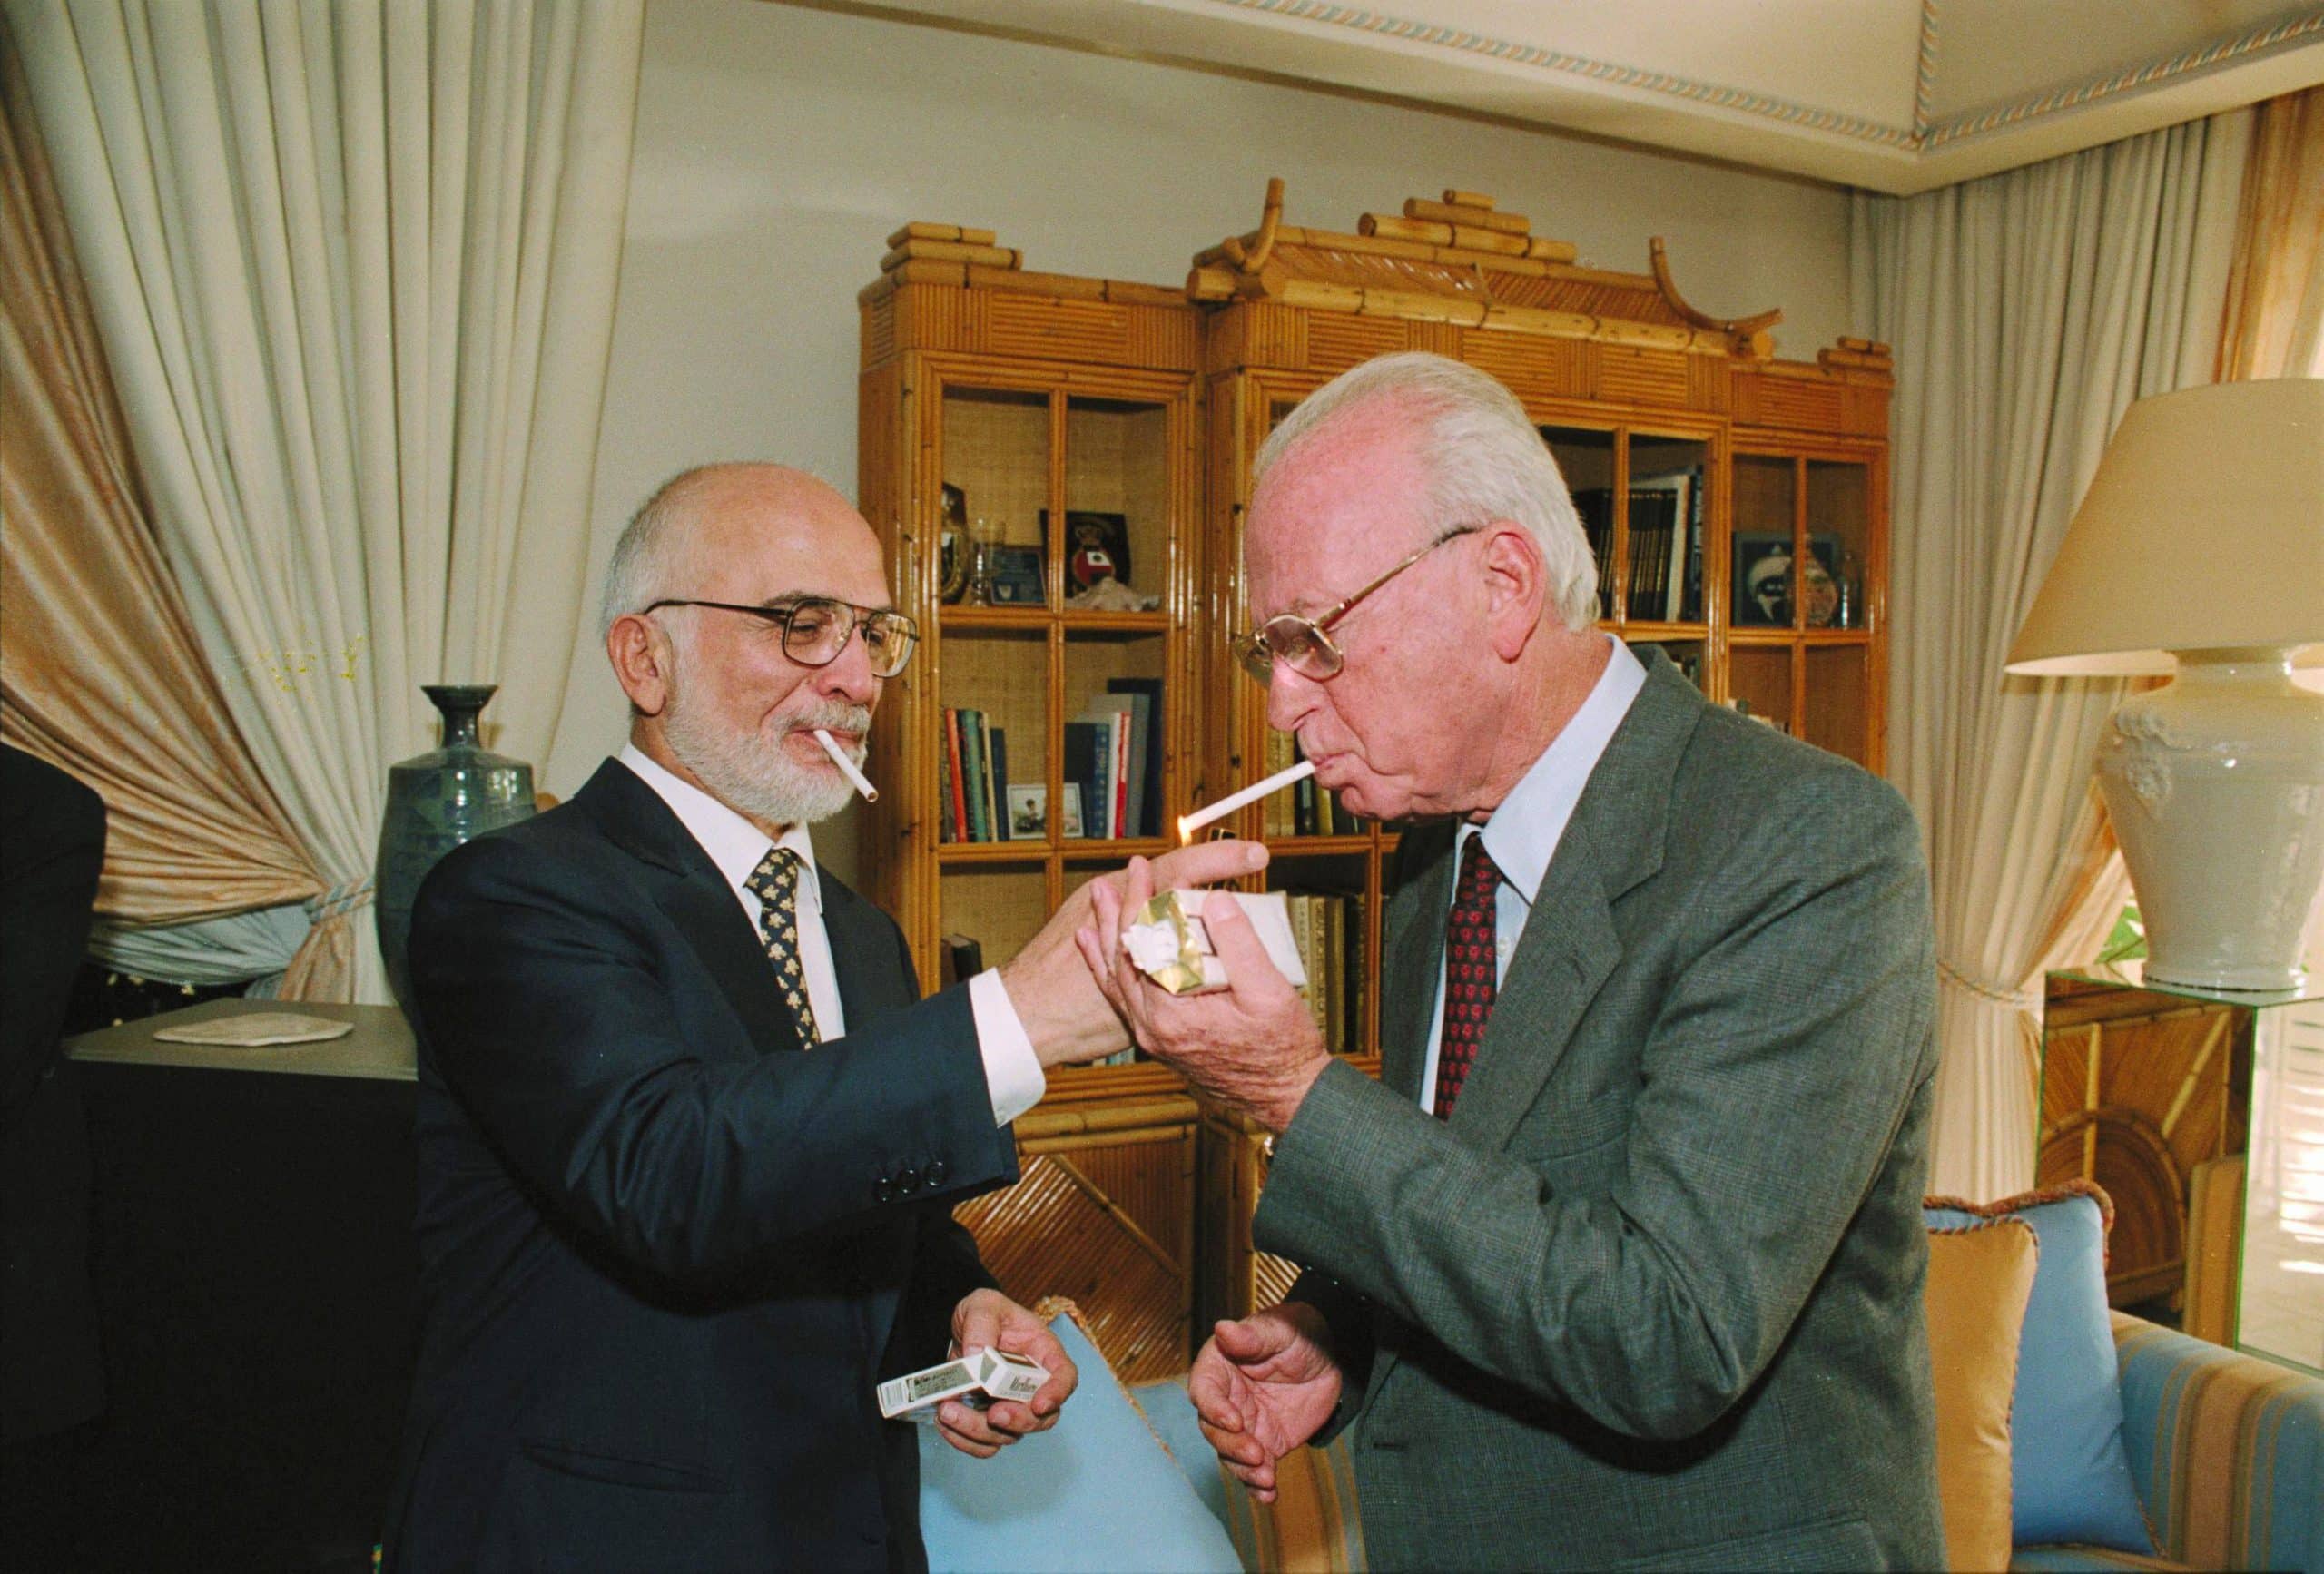 חוסיין, מלך ירדן מדליק לרבין סיגריה במעונו המלכותי בעקבה, לאחר חתימת הסכם השלום בין ישראל לירדן, 26 באוקטובר 1994